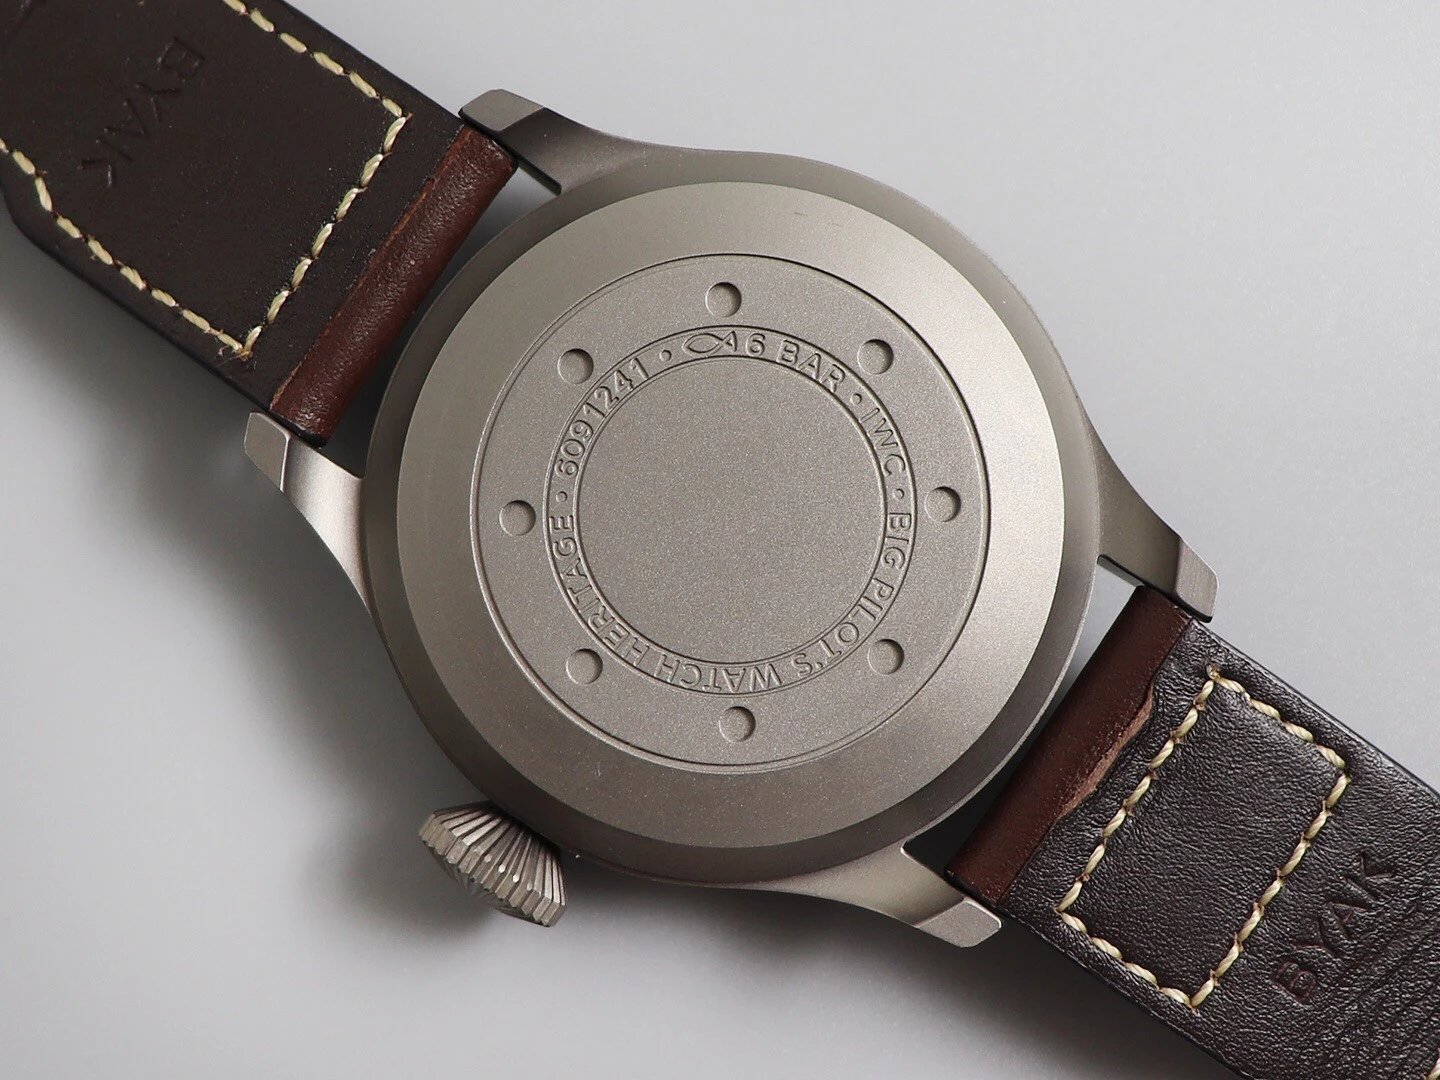 ZF出品--IWC空中霸主（大飞行员）系列男士机械手表。狂野阳刚的设计，霸气侧漏。细腻温柔的工艺，炉火纯青表